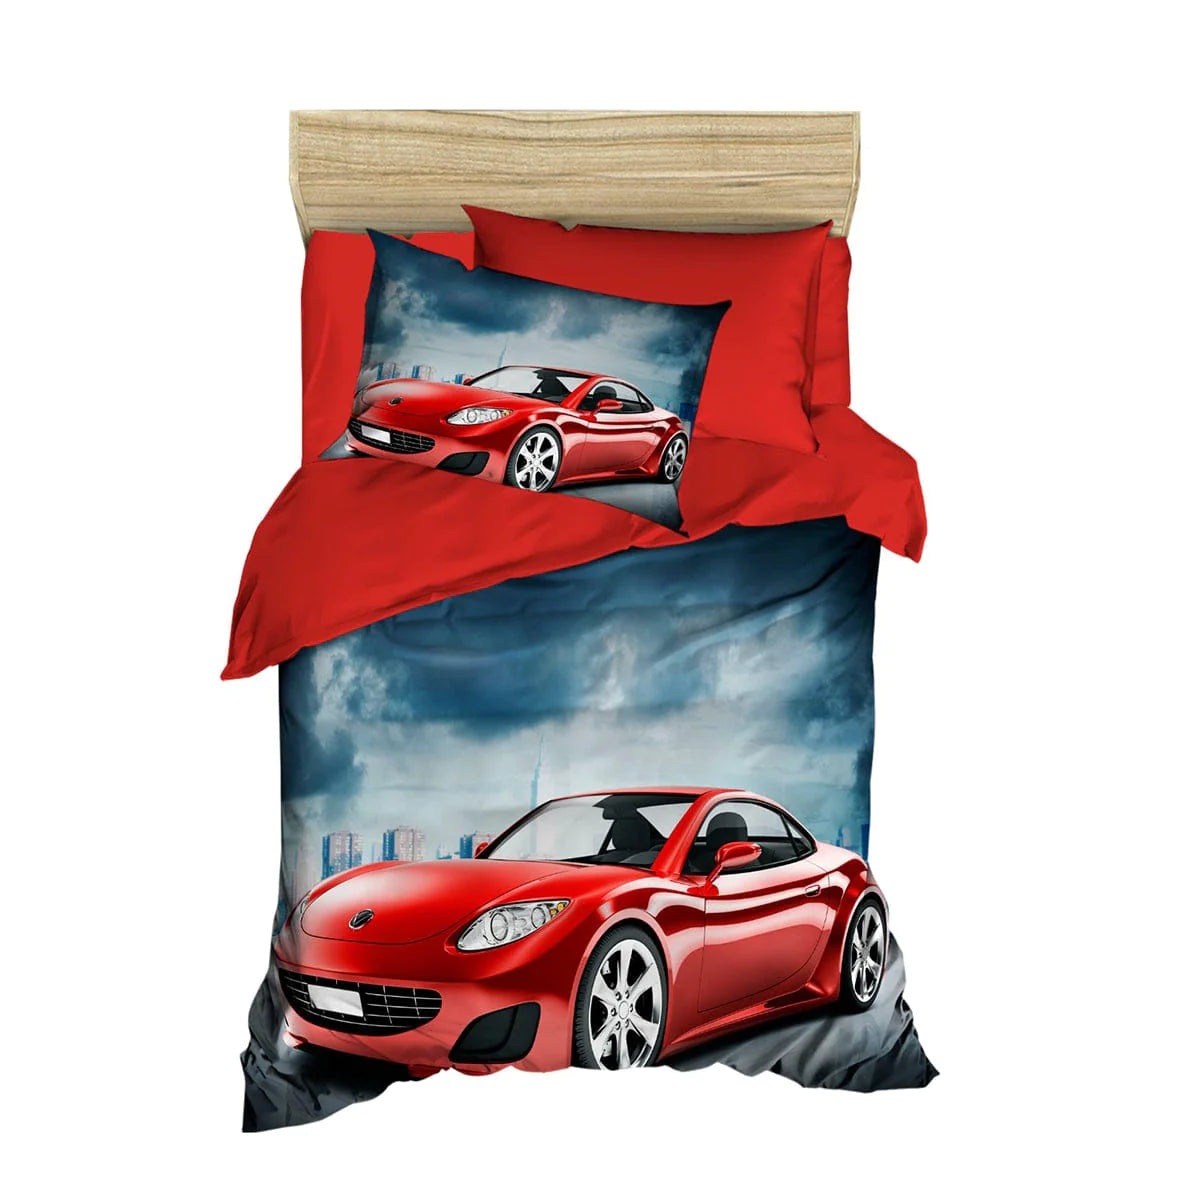 Red Car Racer Bed Duvet, Bedding, Bed Sheets, Cover Set